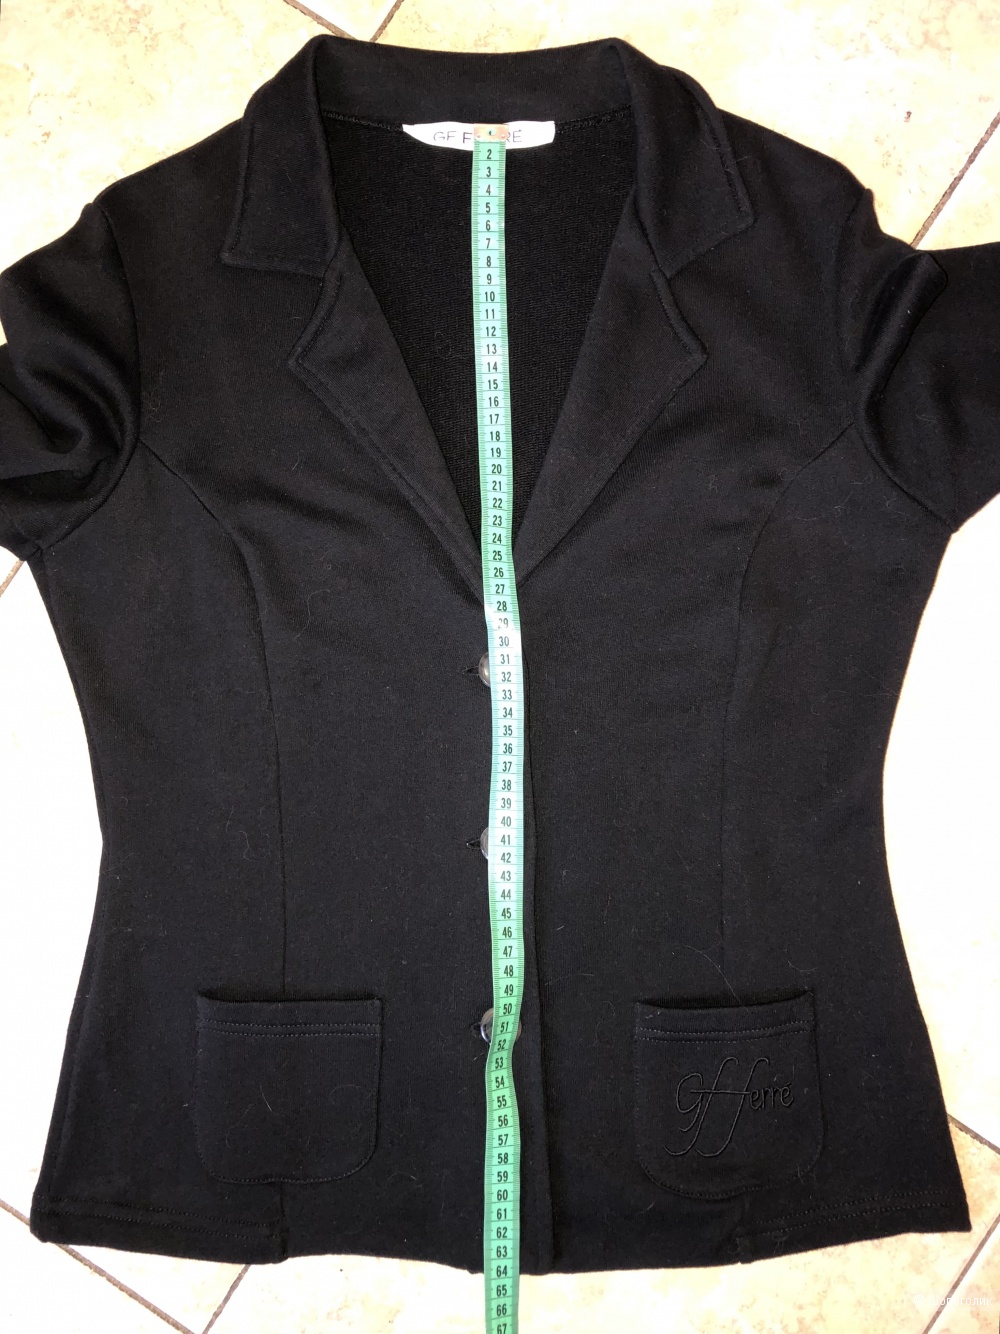 Трикотажный хлопковый пиджак GF Ferre, размер L